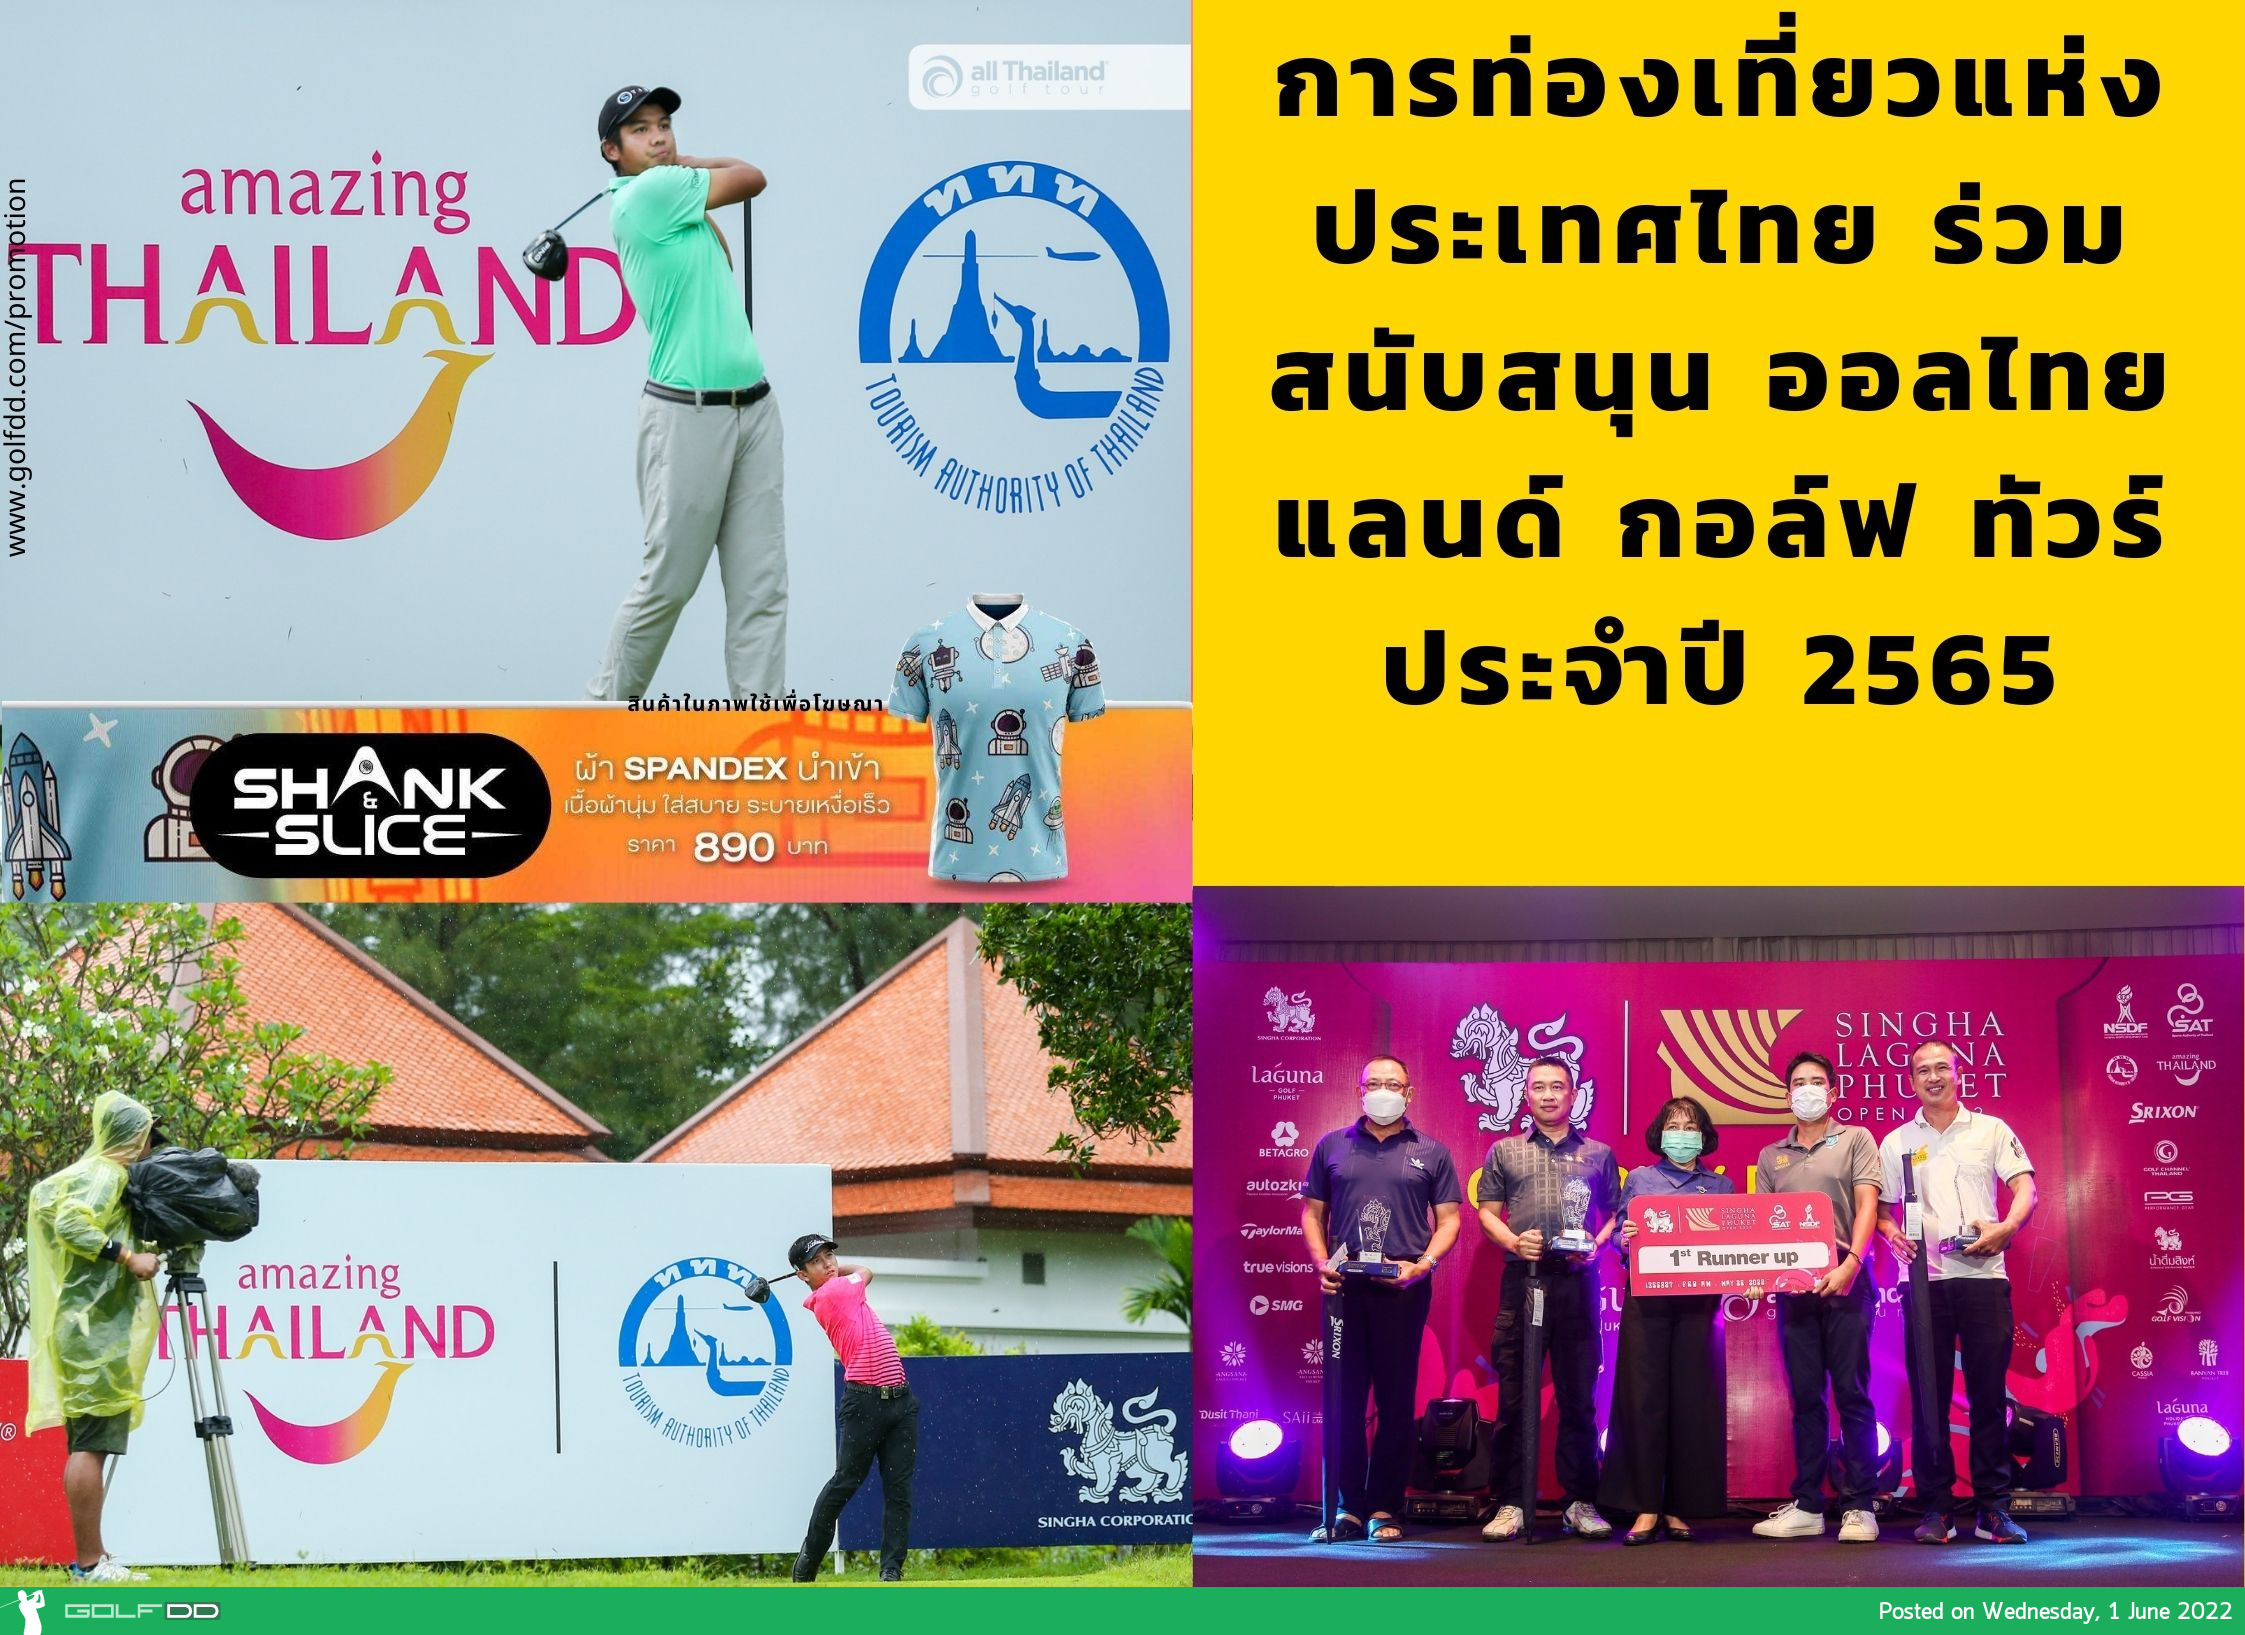 การท่องเที่ยวแห่งประเทศไทย ร่วมสนับสนุน ออลไทยแลนด์ กอล์ฟ ทัวร์ ประจำปี 2565 